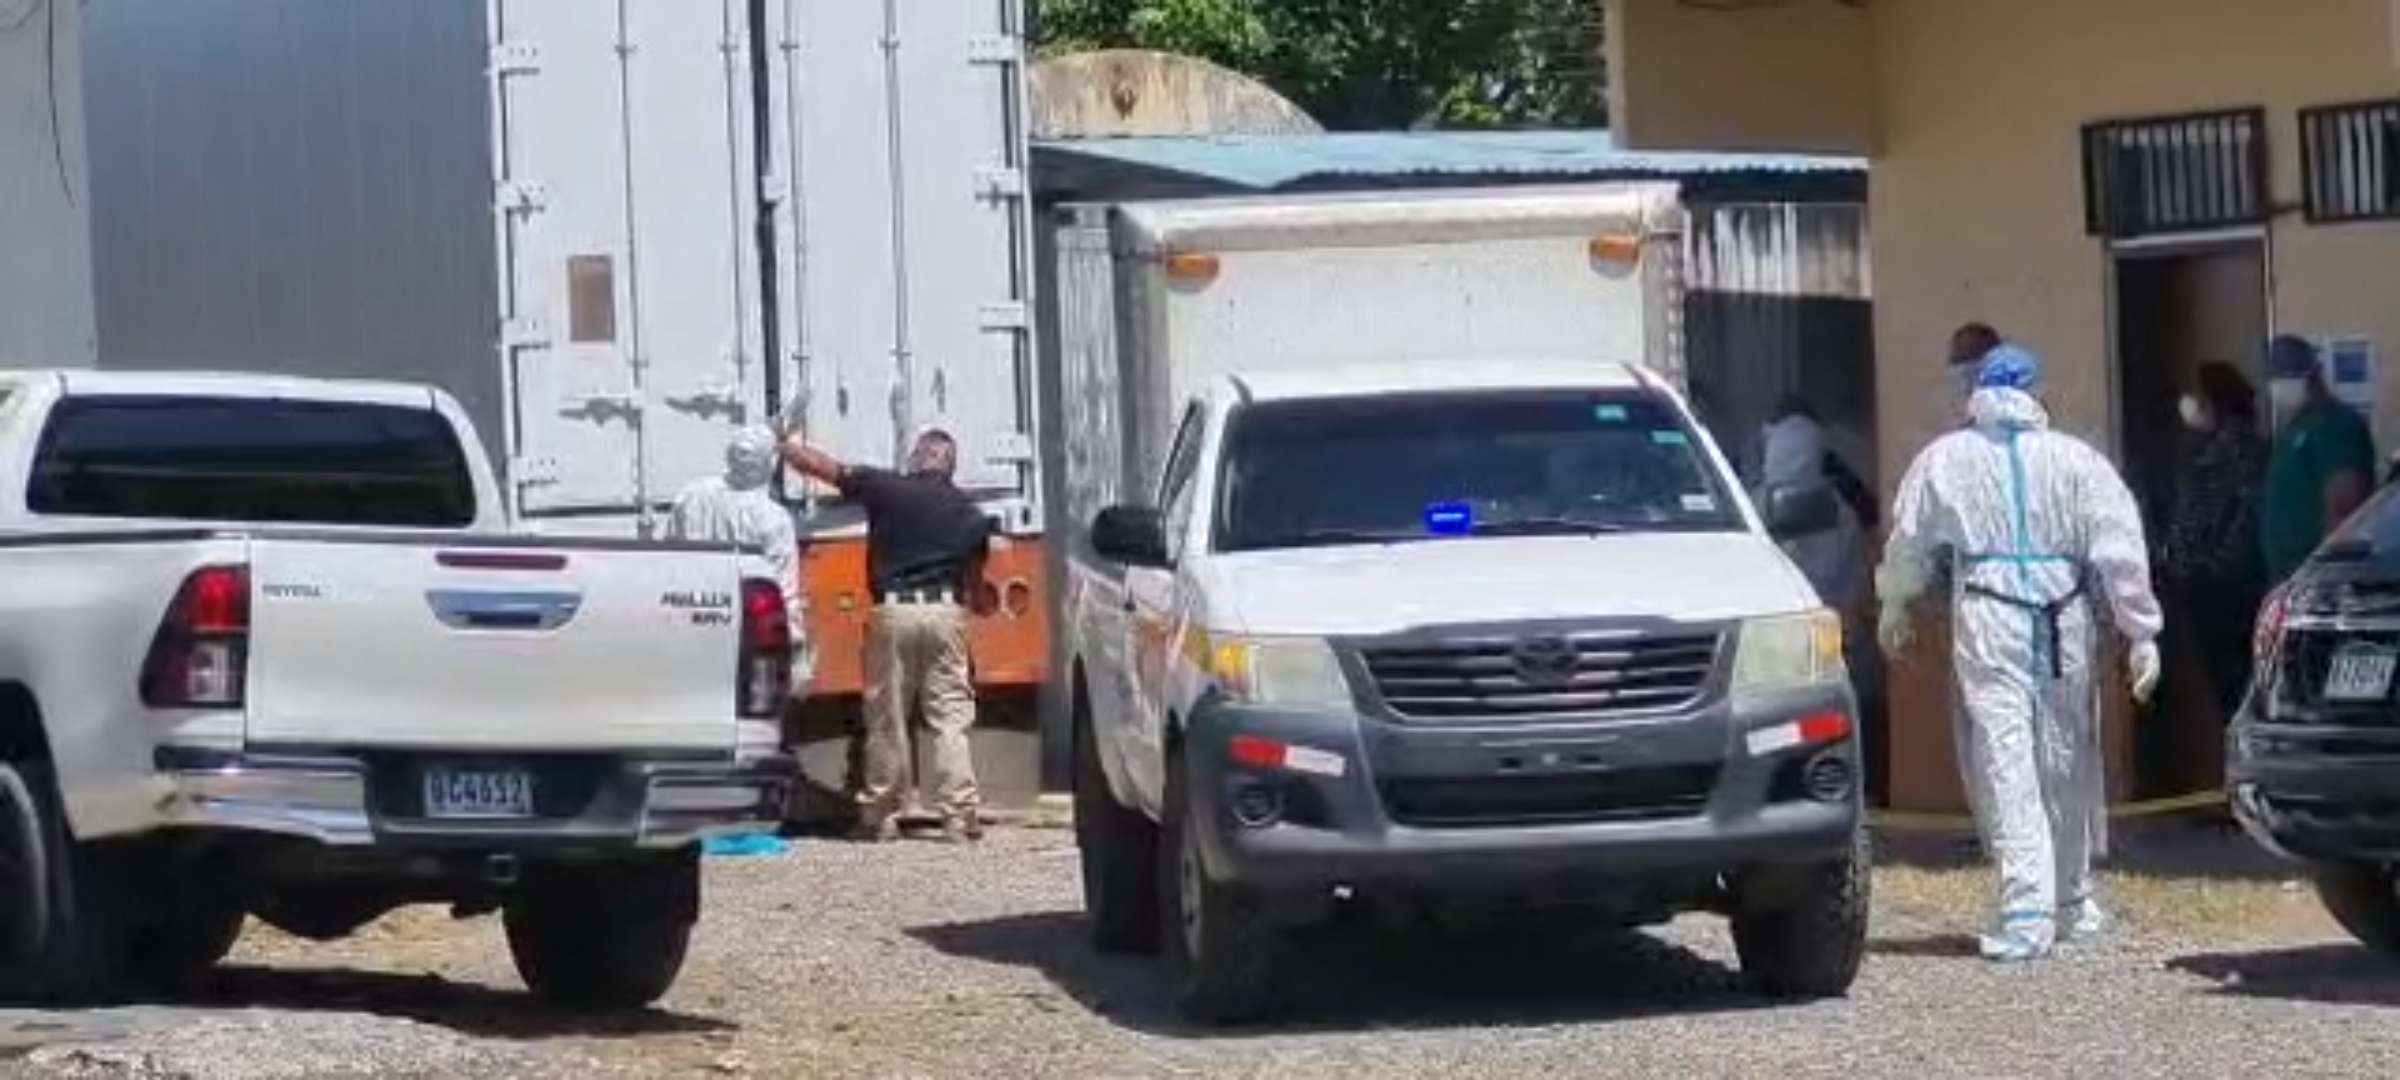 Algunos cadáveres se encuentran en un camión refrigerado.